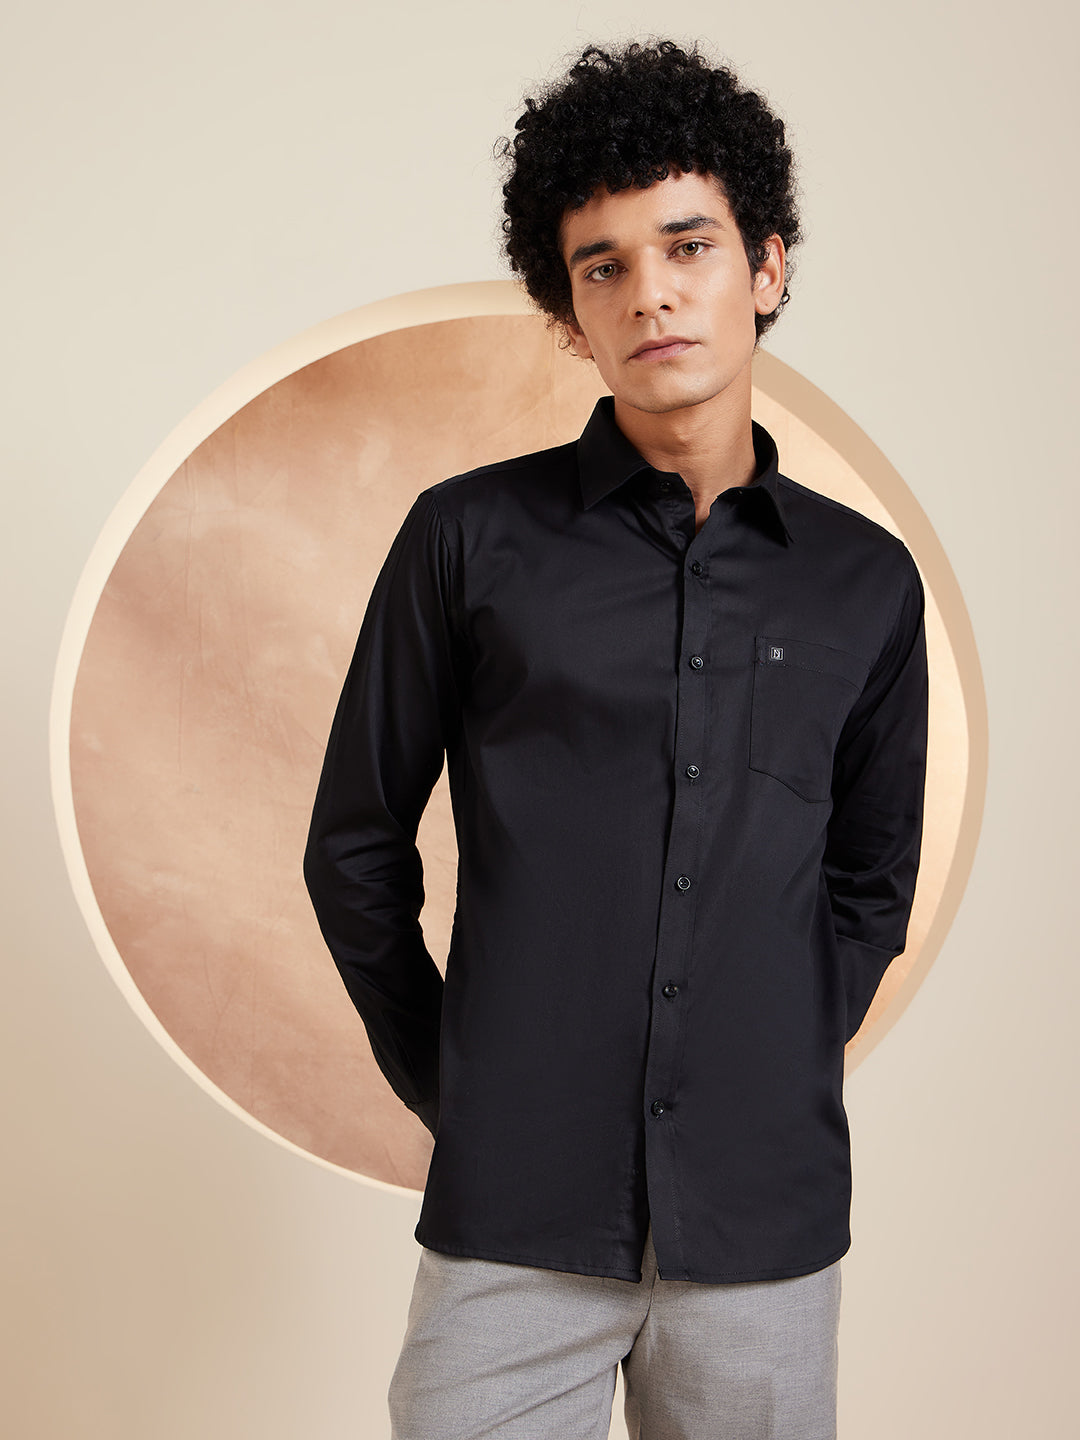 DENNISON Black Pure Cotton Formal Shirt